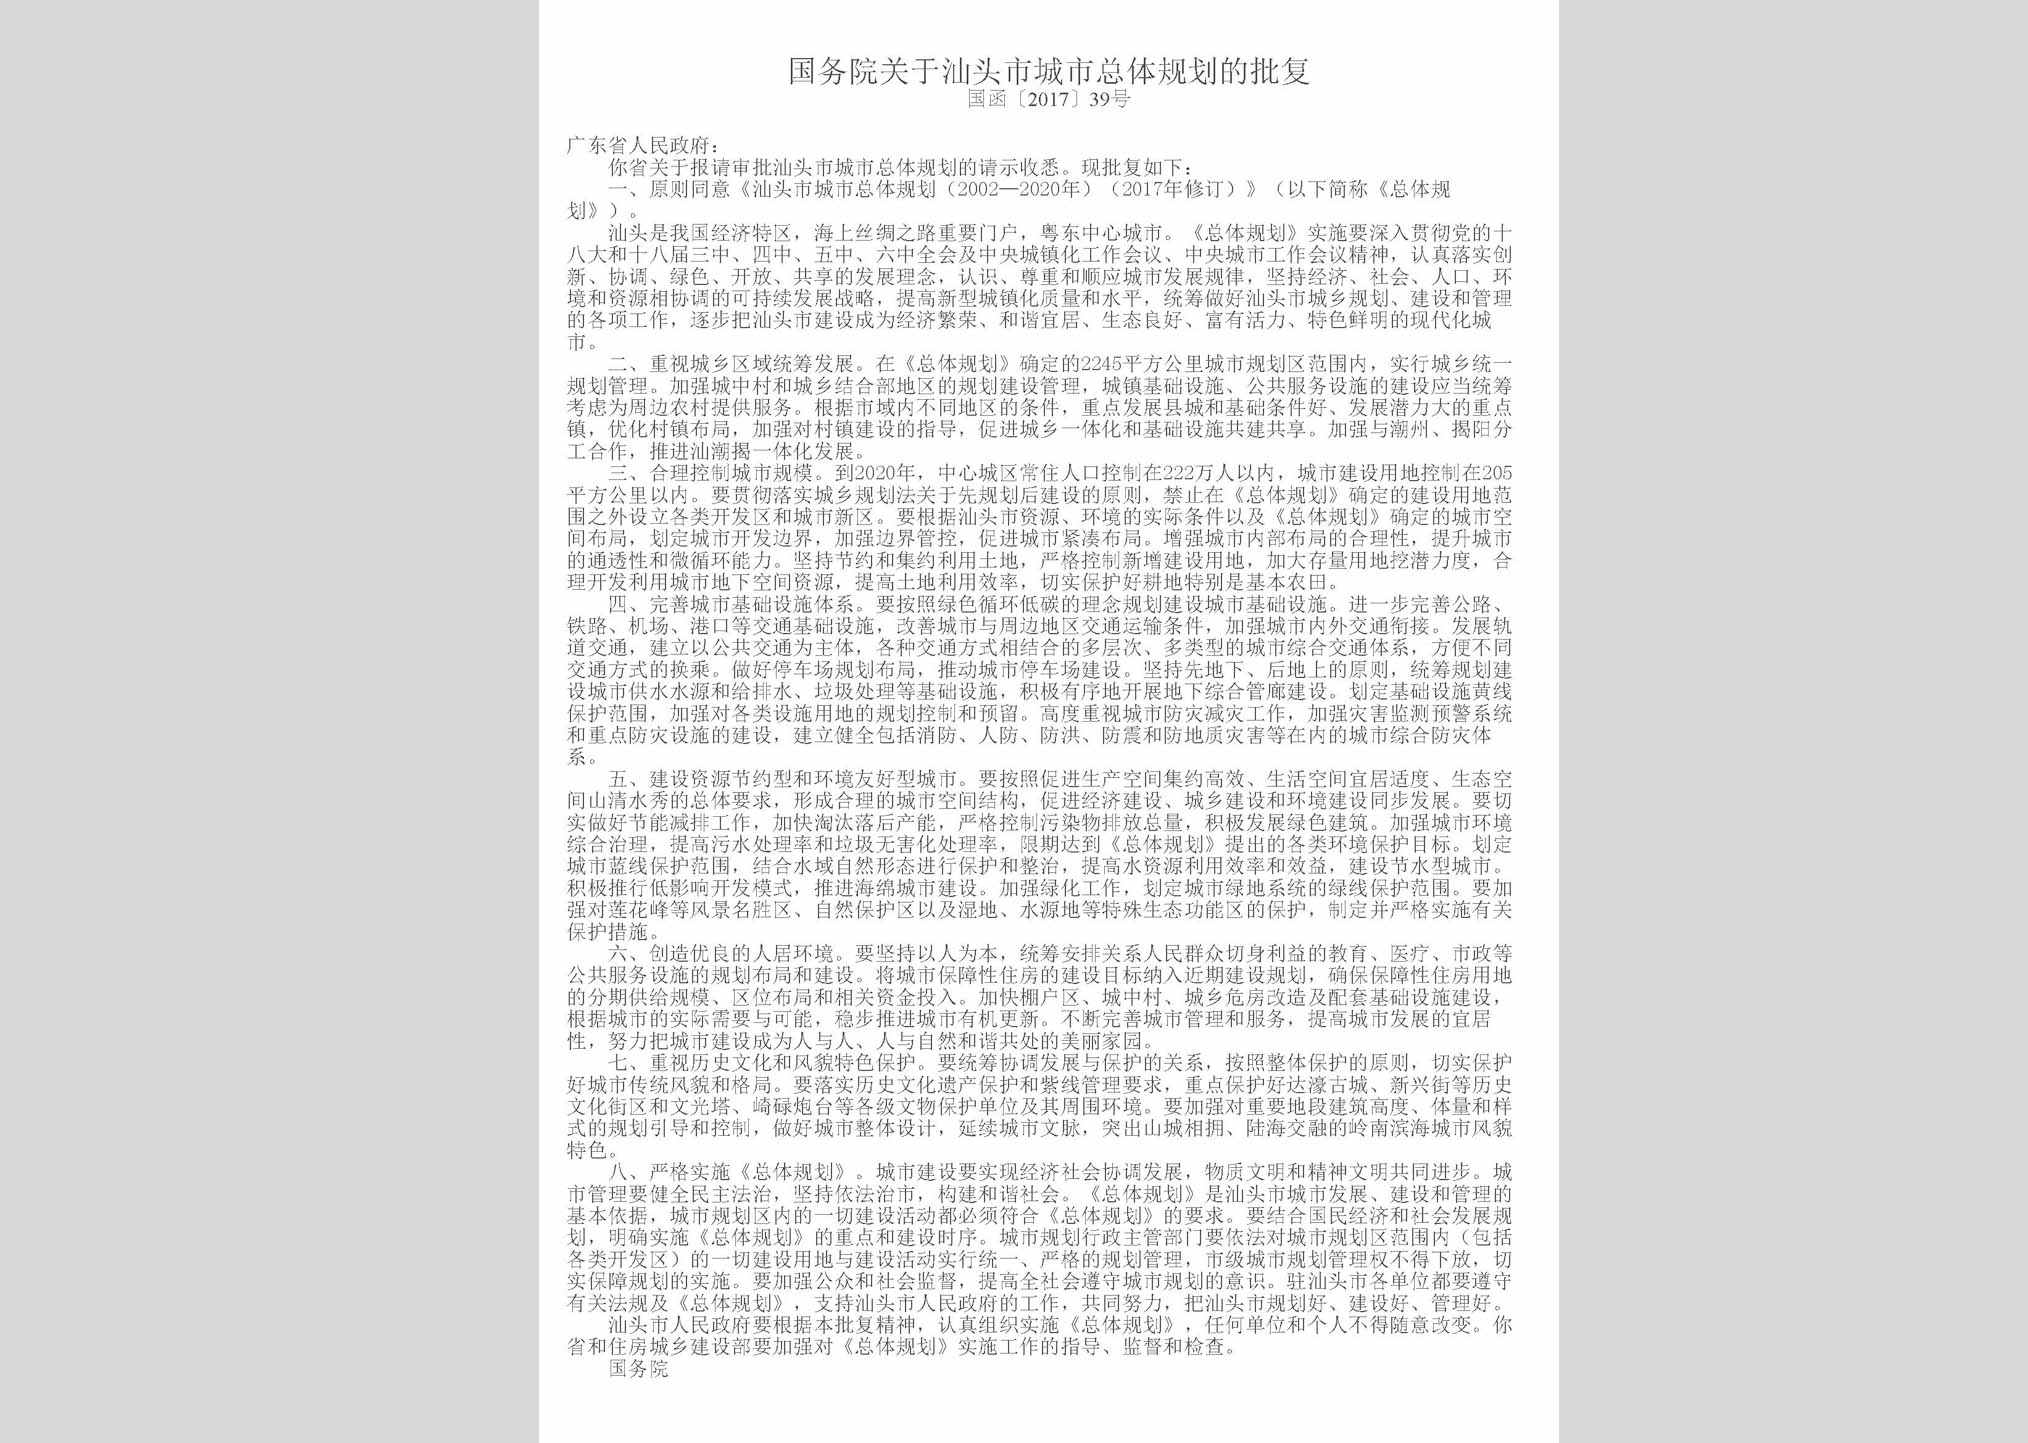 国函[2017]39号：国务院关于汕头市城市总体规划的批复